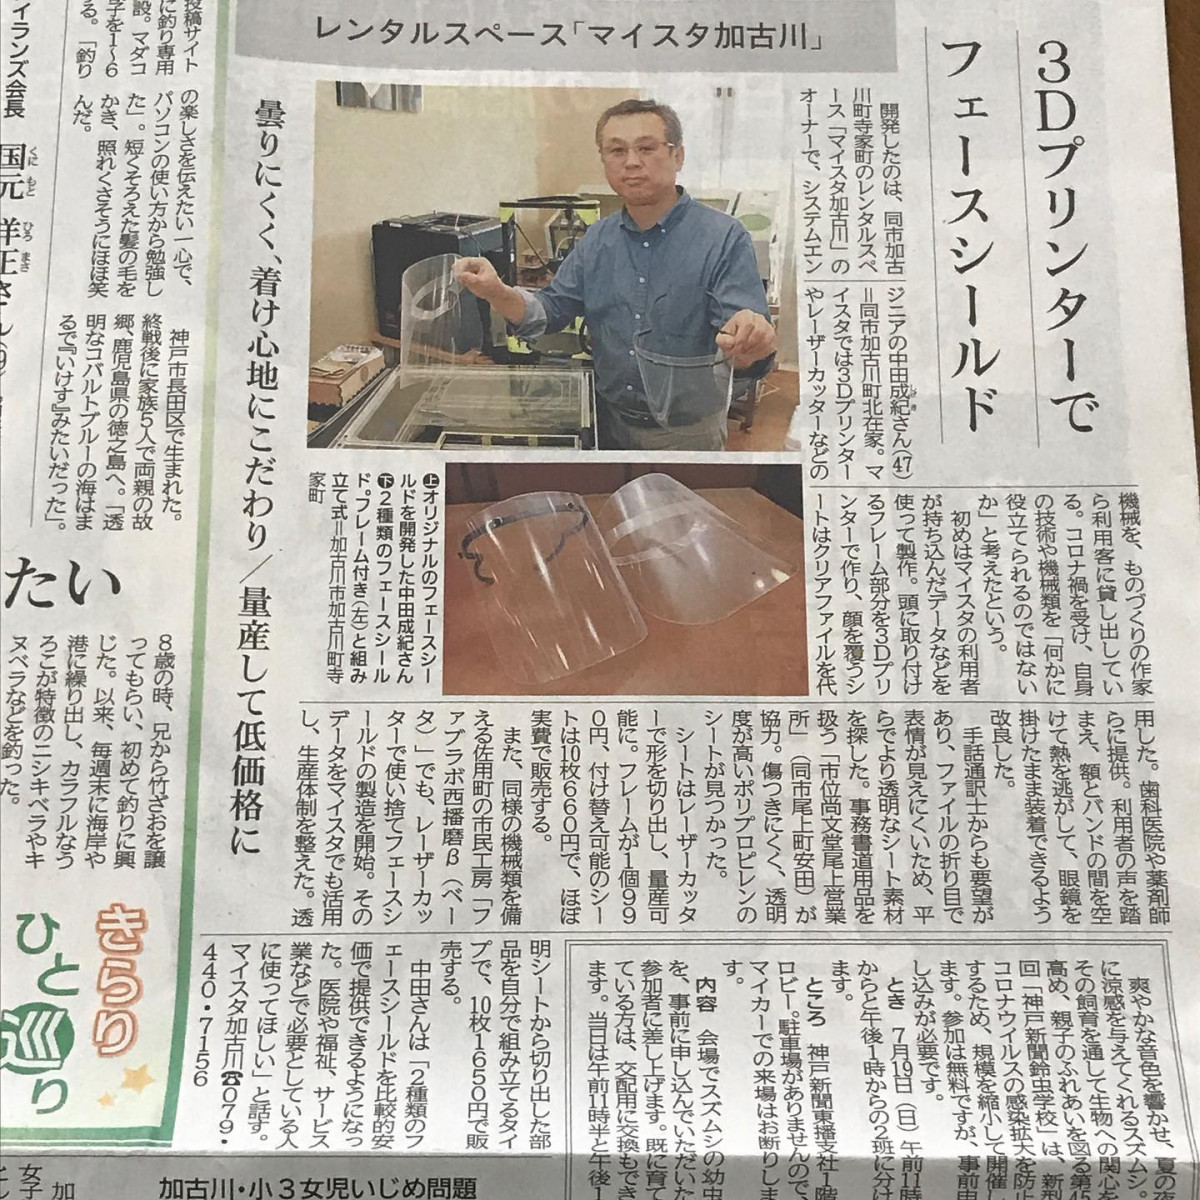 #神戸新聞 東播版に、3Dプリンター、レーザー カッターで作ったフェースシールドが掲載されました。https://www.kobe-np.co.jp/news/touban/202006/sp/0013464319.shtml#手話通訳士 の現場の声を聞き、#歯科医院 、 #薬剤師 、#レジうち #パートの仕事 をしているお客様。様々な人の要望、試着してのアドバイスが、形になりました。#チーム地元 で、#三人寄れば文殊の知恵 のように、皆さんの #経験やノウハウ が、#化学反応を起こし 、実現した 大きな #大きな第一歩 です❣️ #マイスタ加古川 #兵庫県 #加古川市 #加古川 #ほぼ日刊マイスタ通信 #レーザーカッター #3dプリンター - Instagram投稿